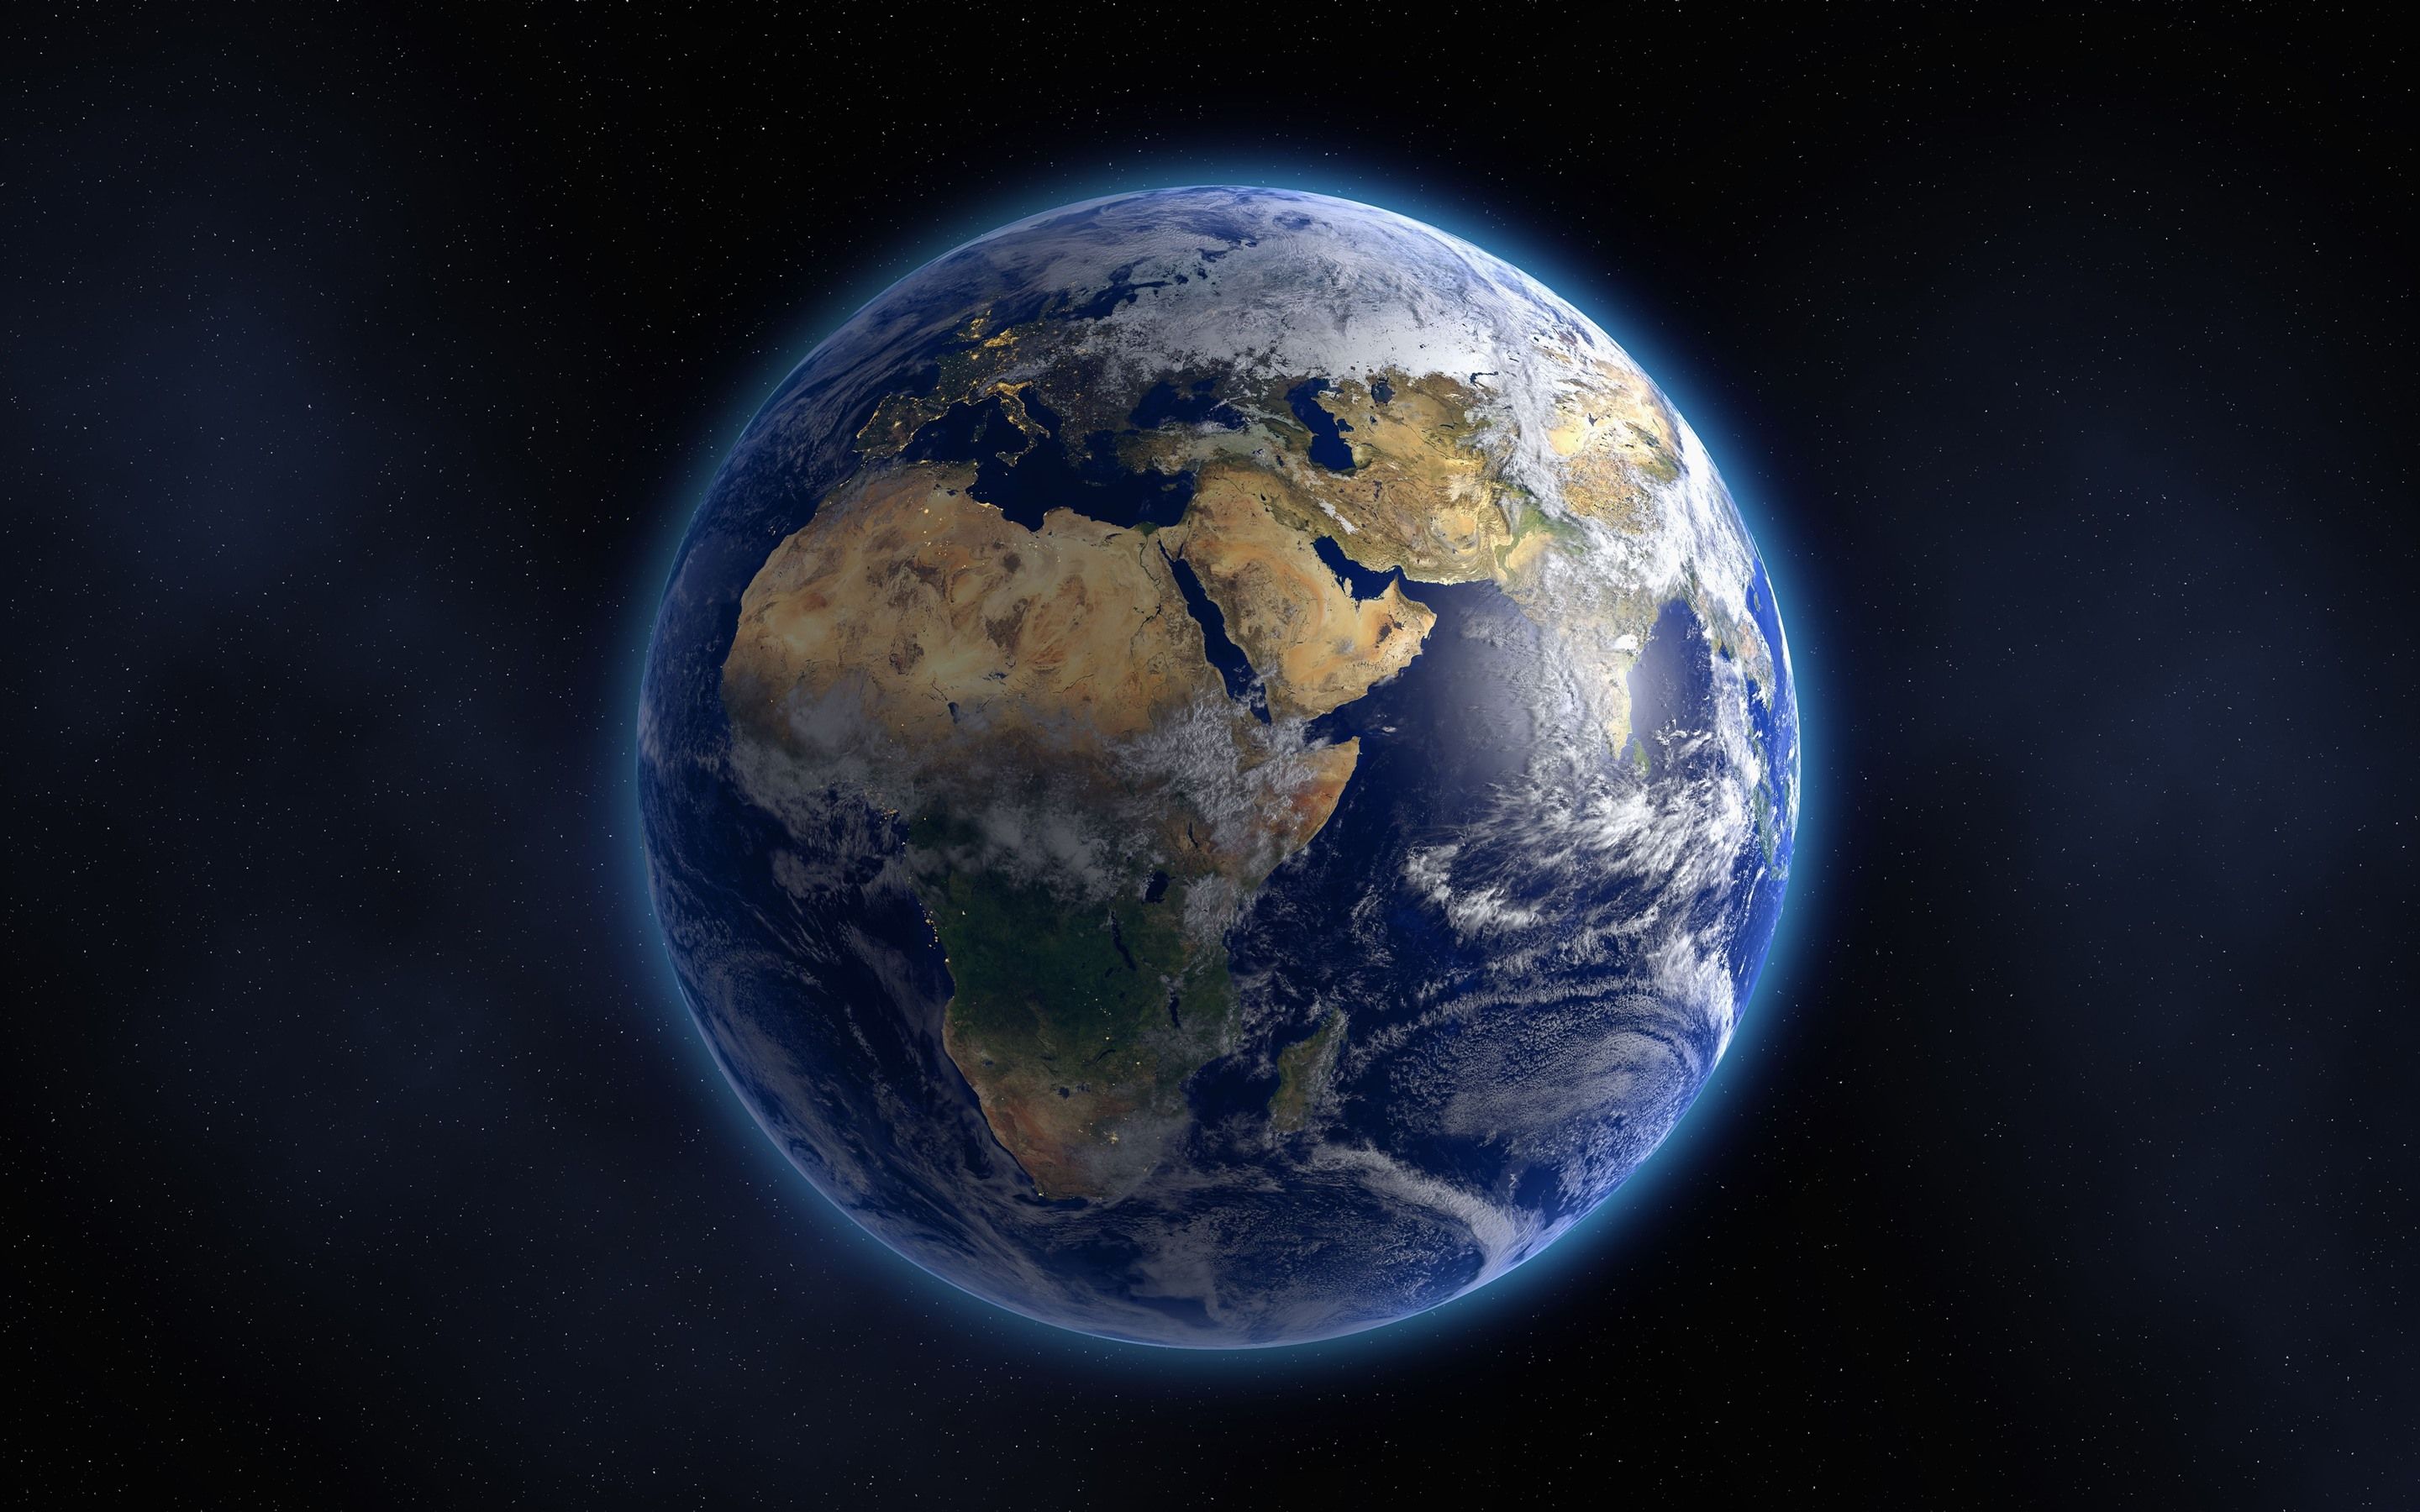  Erde Hintergrundbild 2880x1800. Schöner blauer Planet, Erde, Glühen 5120x2880 UHD 5K Hintergrundbilder, HD, Bild